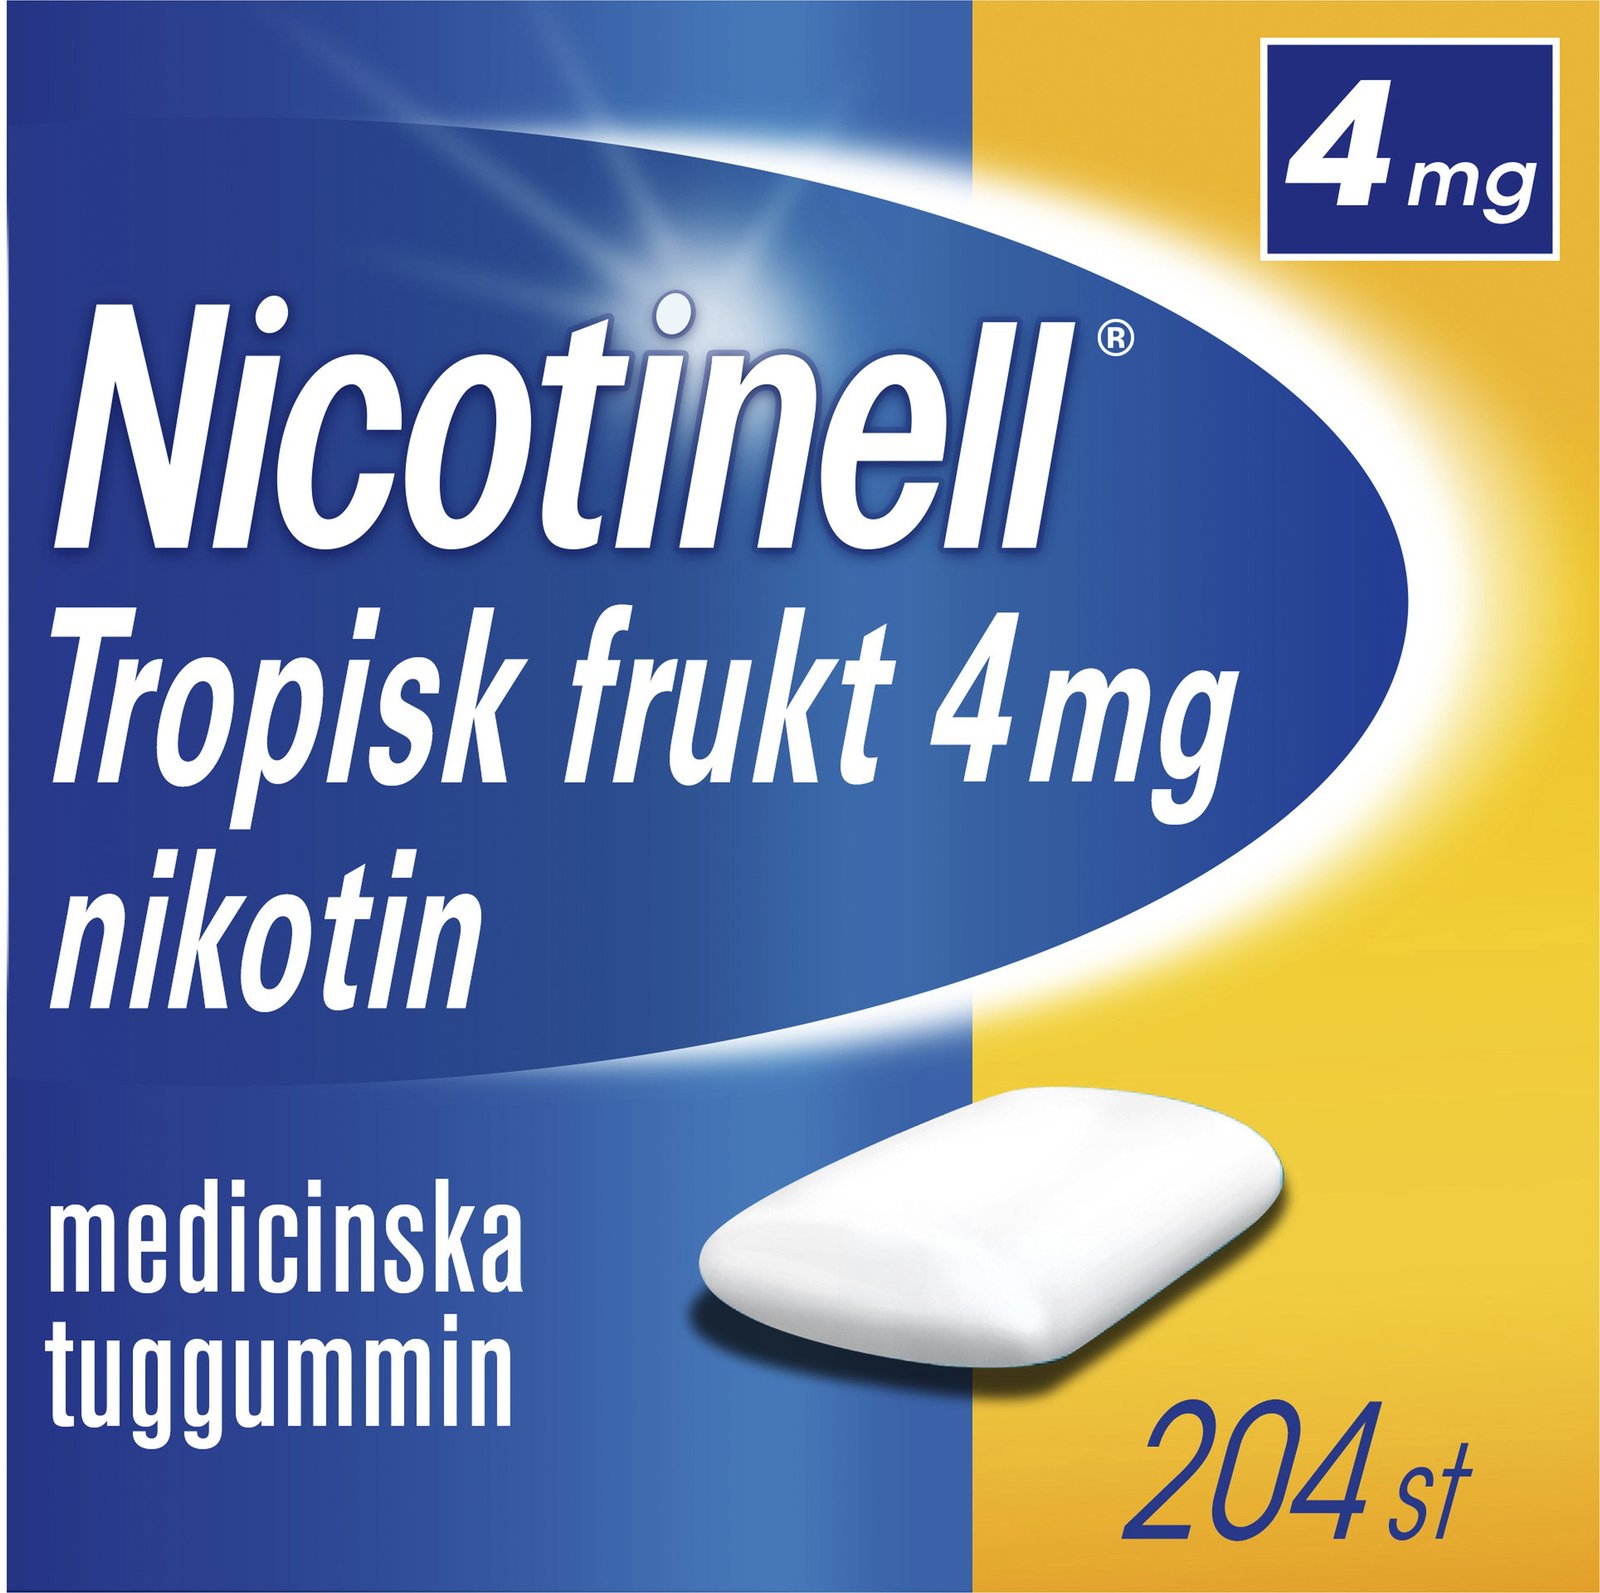 Nicotinell Tropisk Frukt 4 mg Nikotin Medicinska tuggummin 204 st